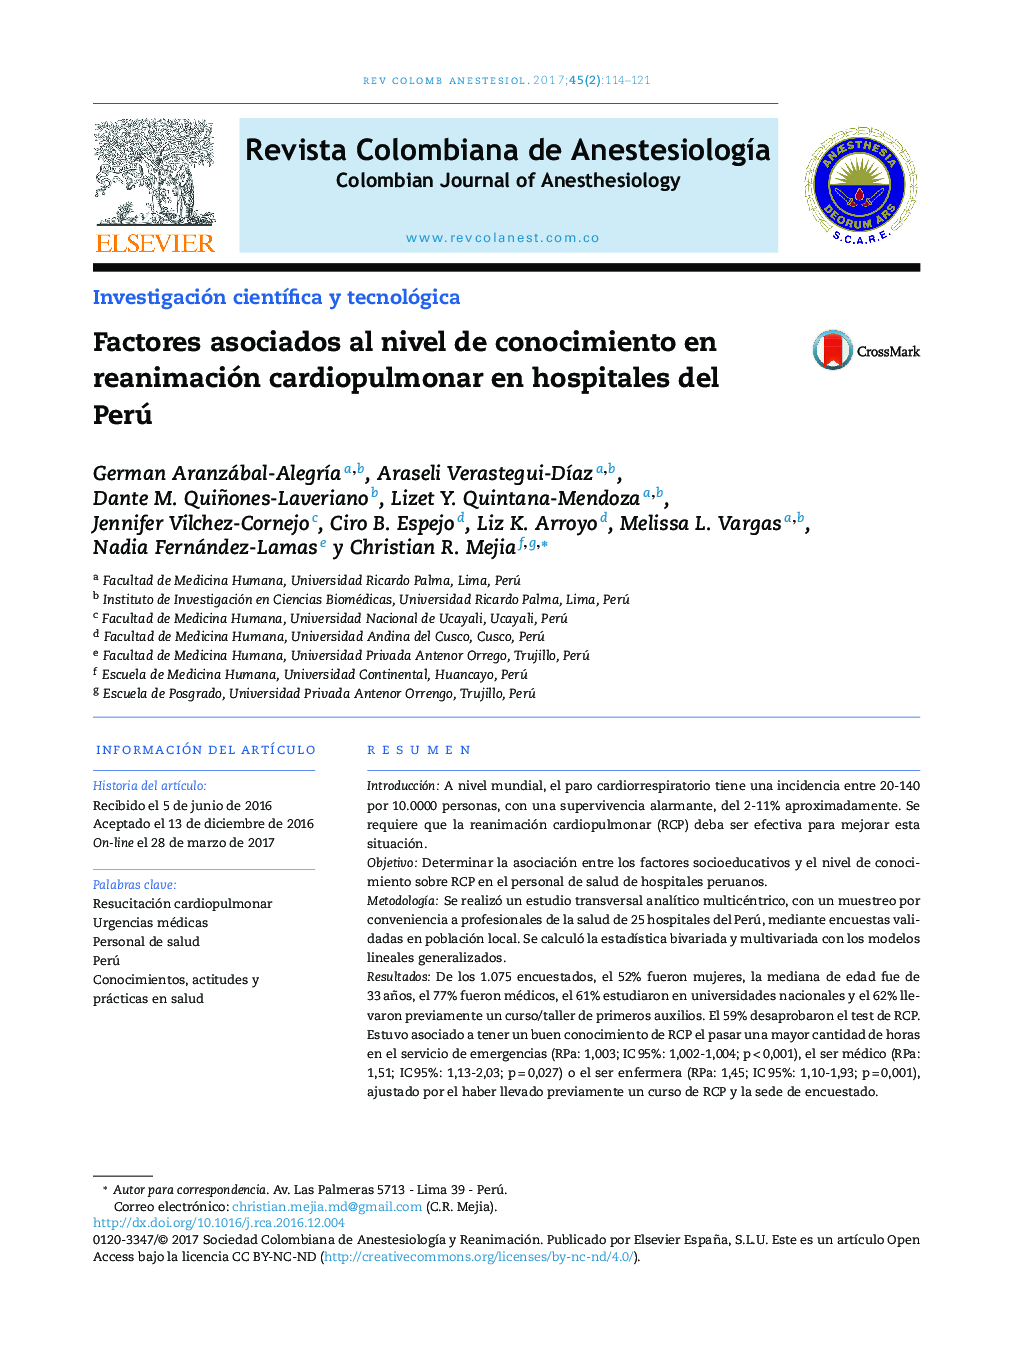 Factores asociados al nivel de conocimiento en reanimación cardiopulmonar en hospitales del Perú